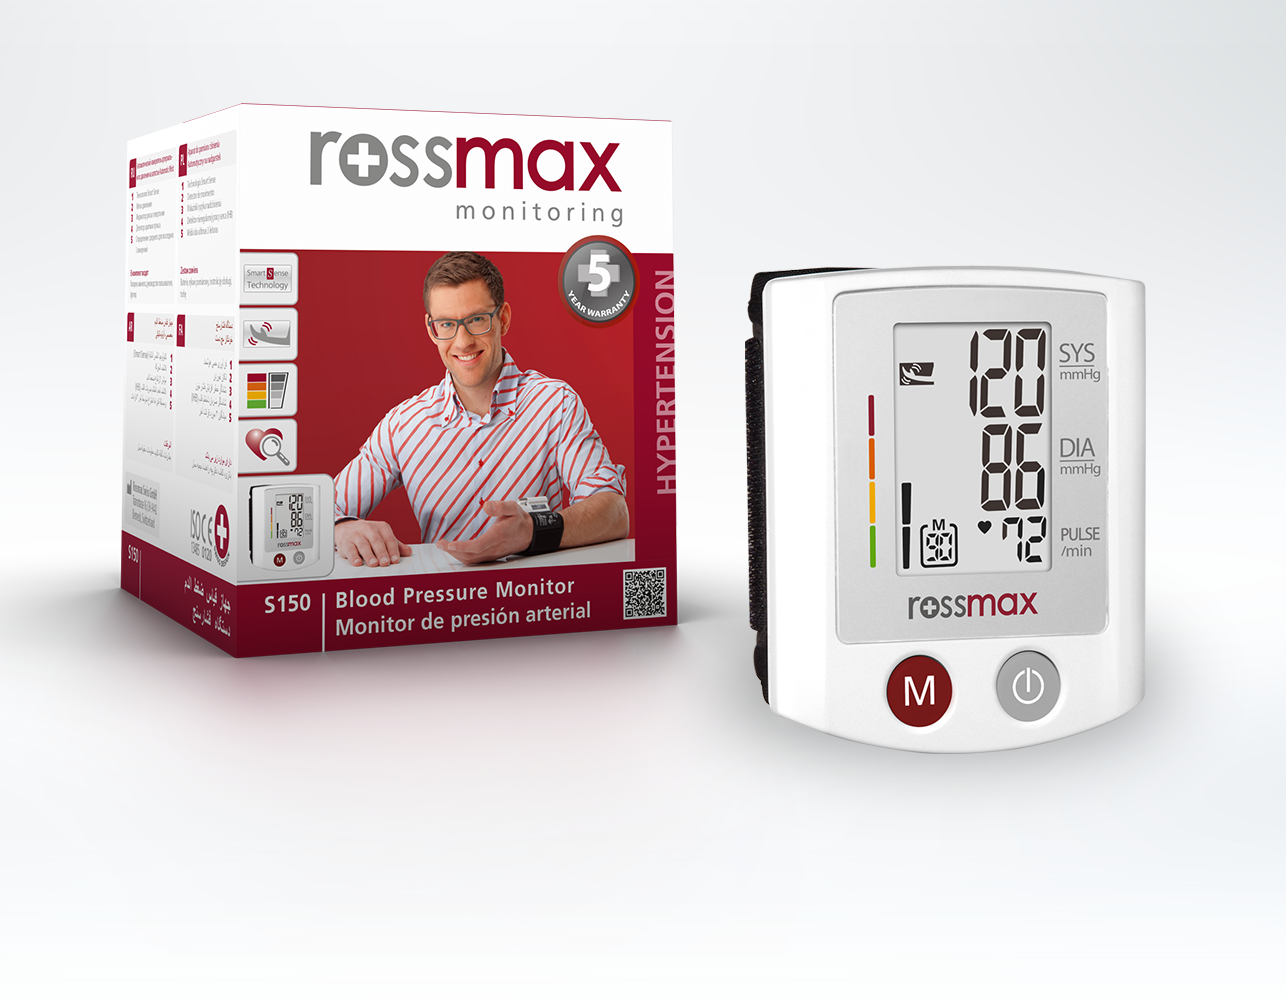 Hướng dẫn cách sử dụng máy đo huyết áp rossmax đo huyết áp chính xác tại nhà